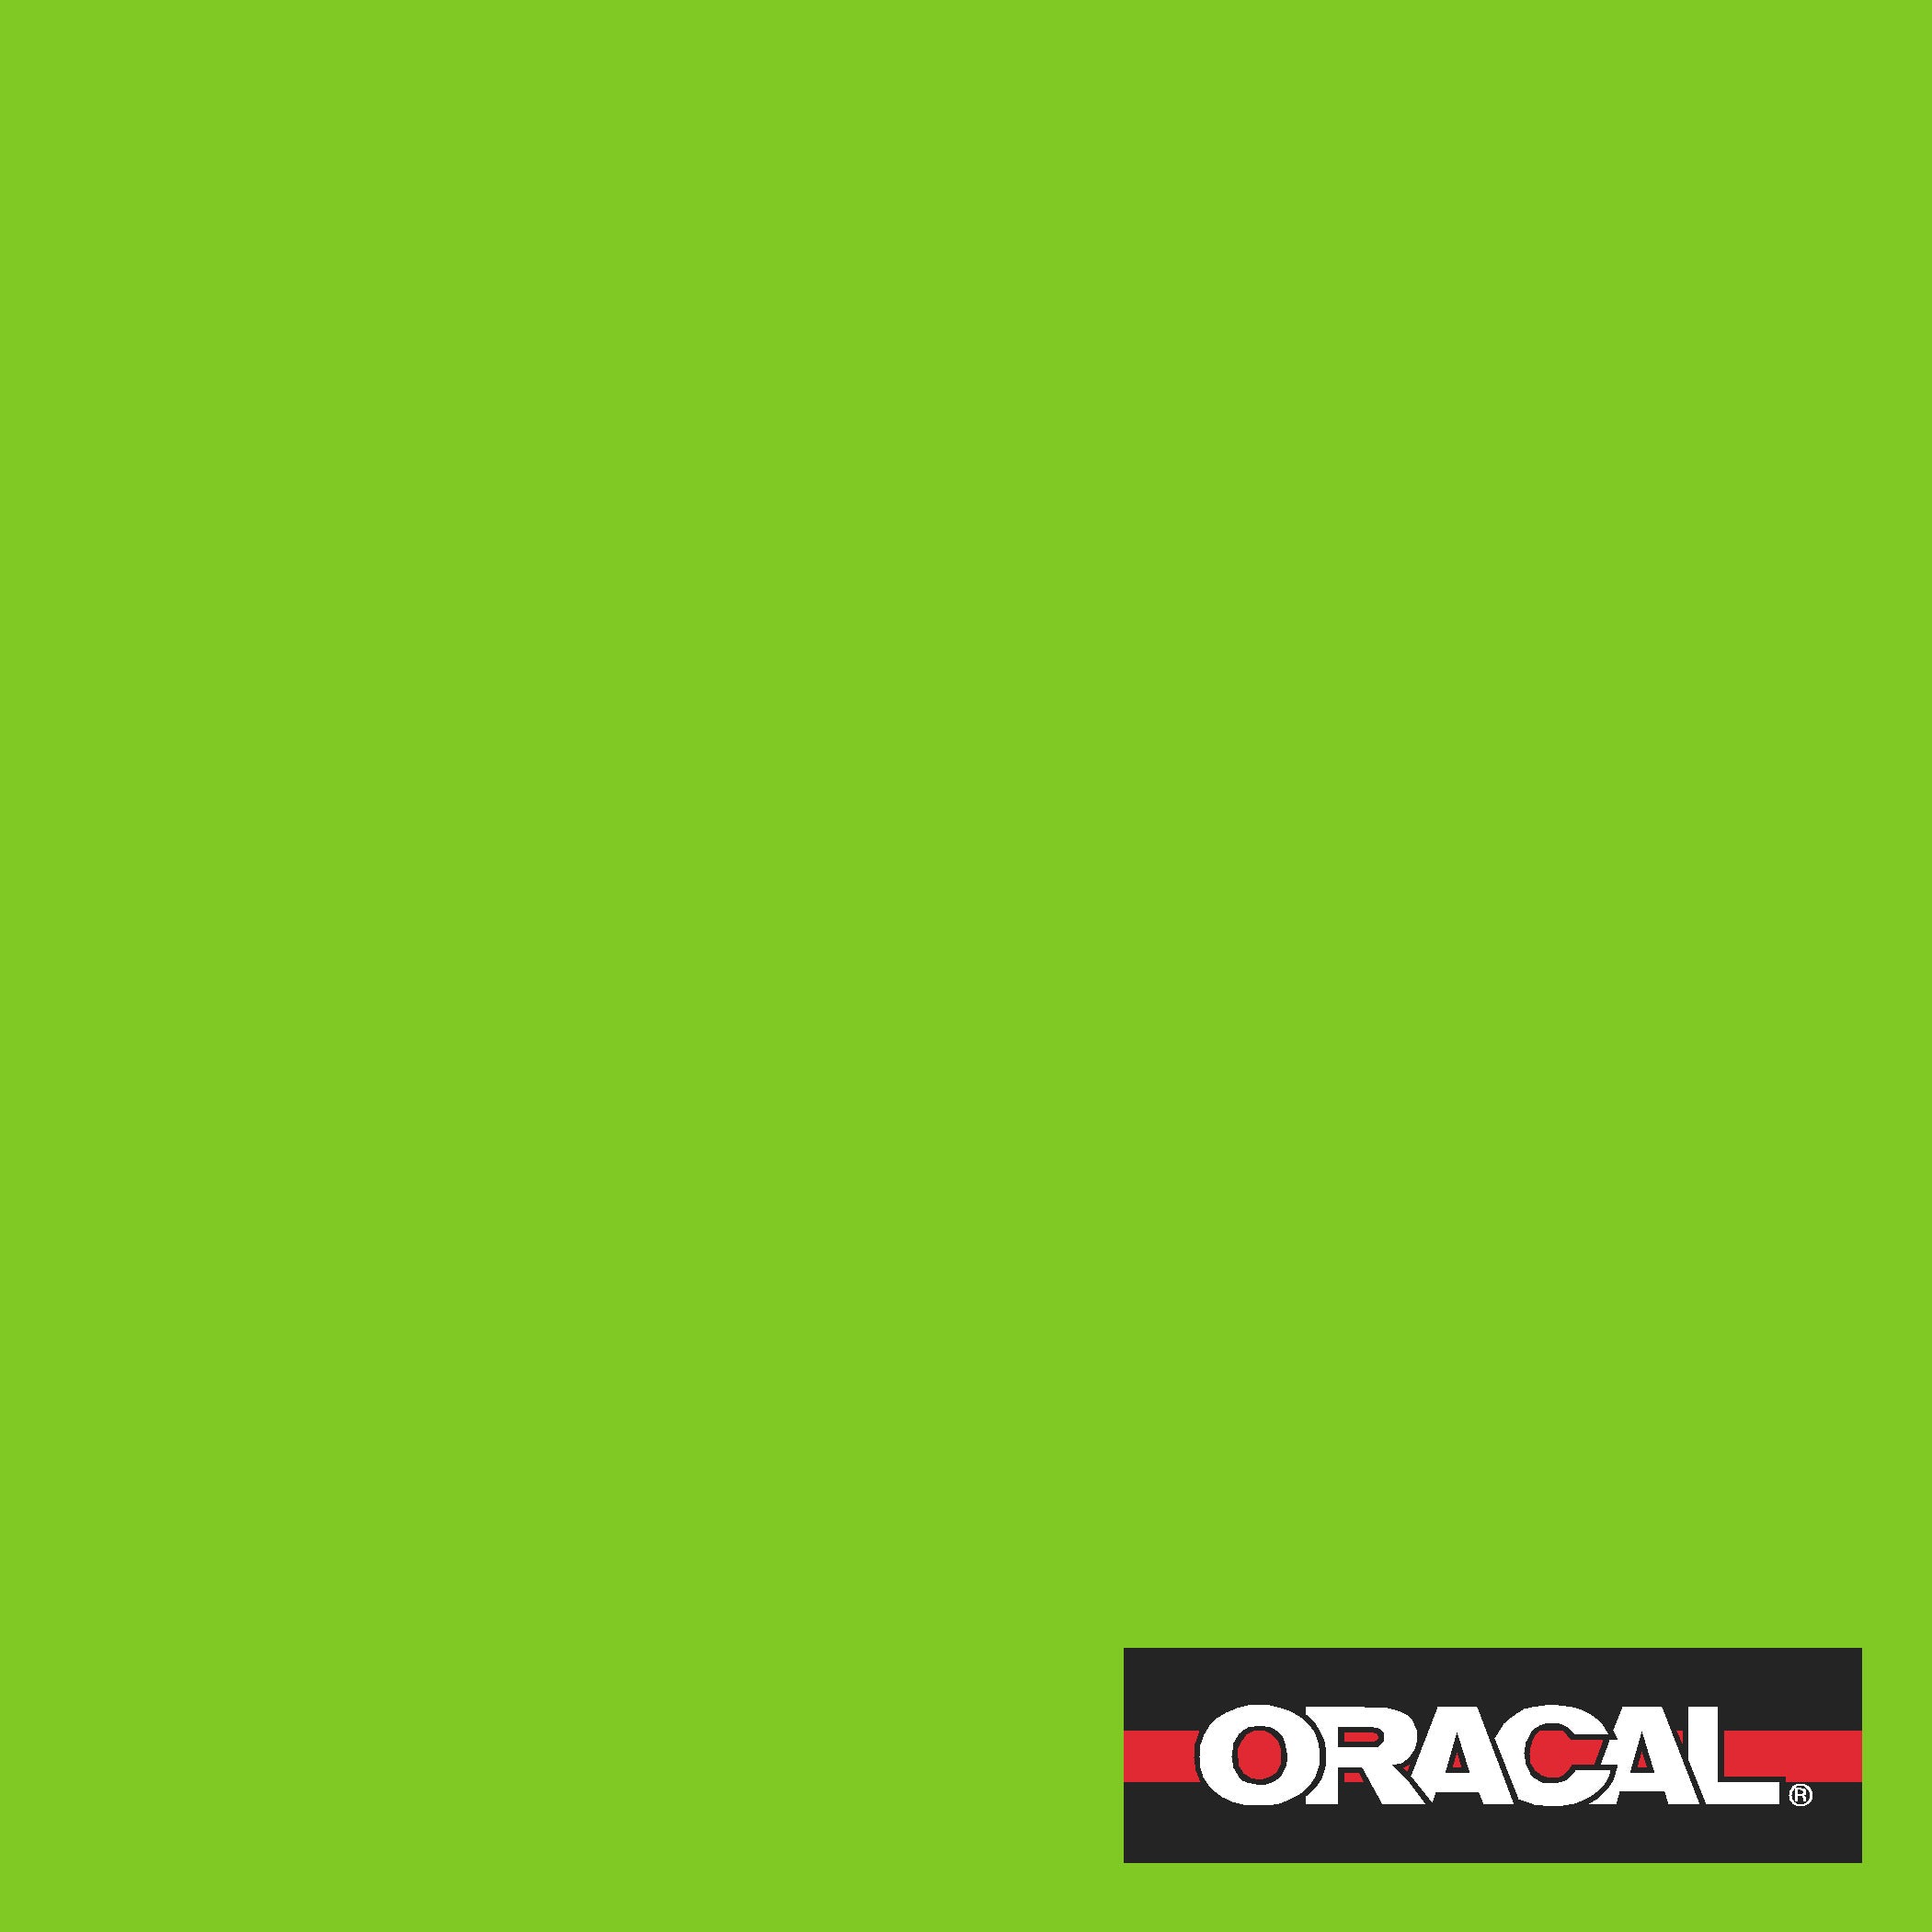 Oracal 651 Adhesive Vinyl 063 Lime-tree green – MyVinylCircle